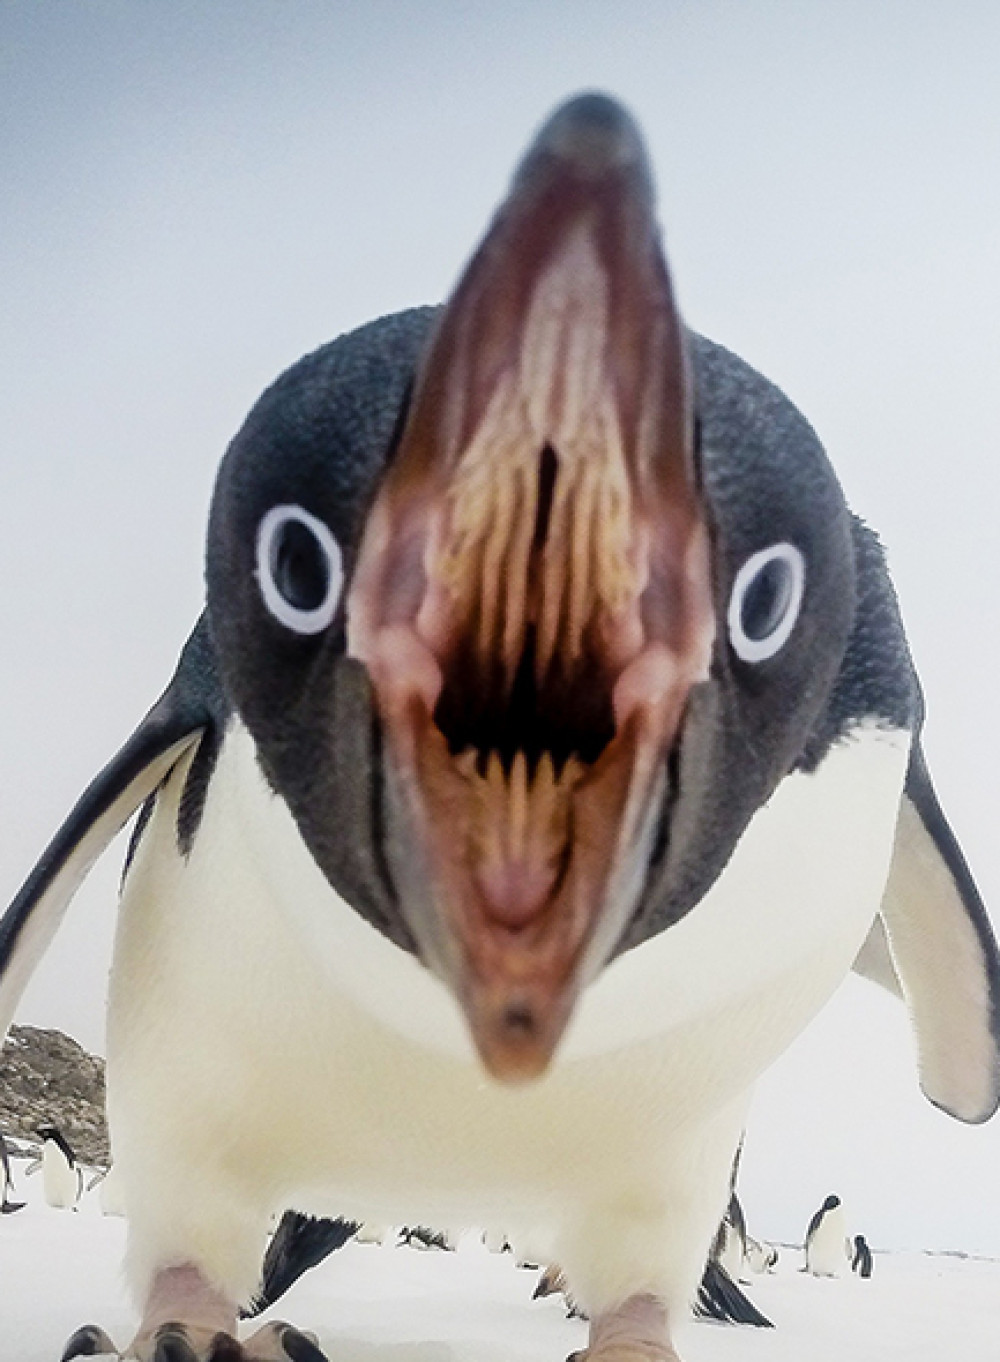 cropped-adelie-penguin-antarctica_89655_990x7421.jpg